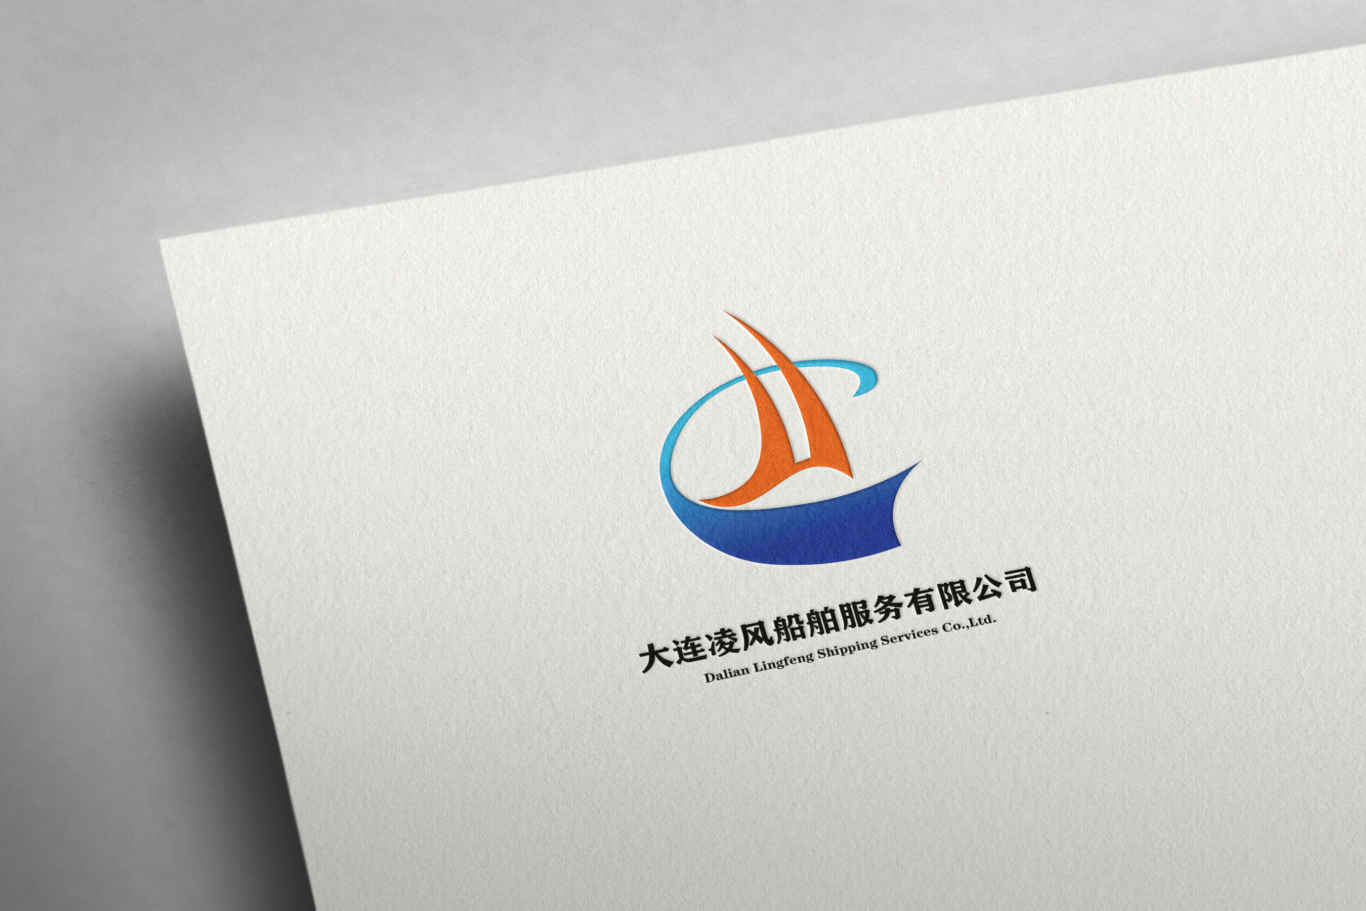 大连凌风船舶服务有限公司logo设计图2